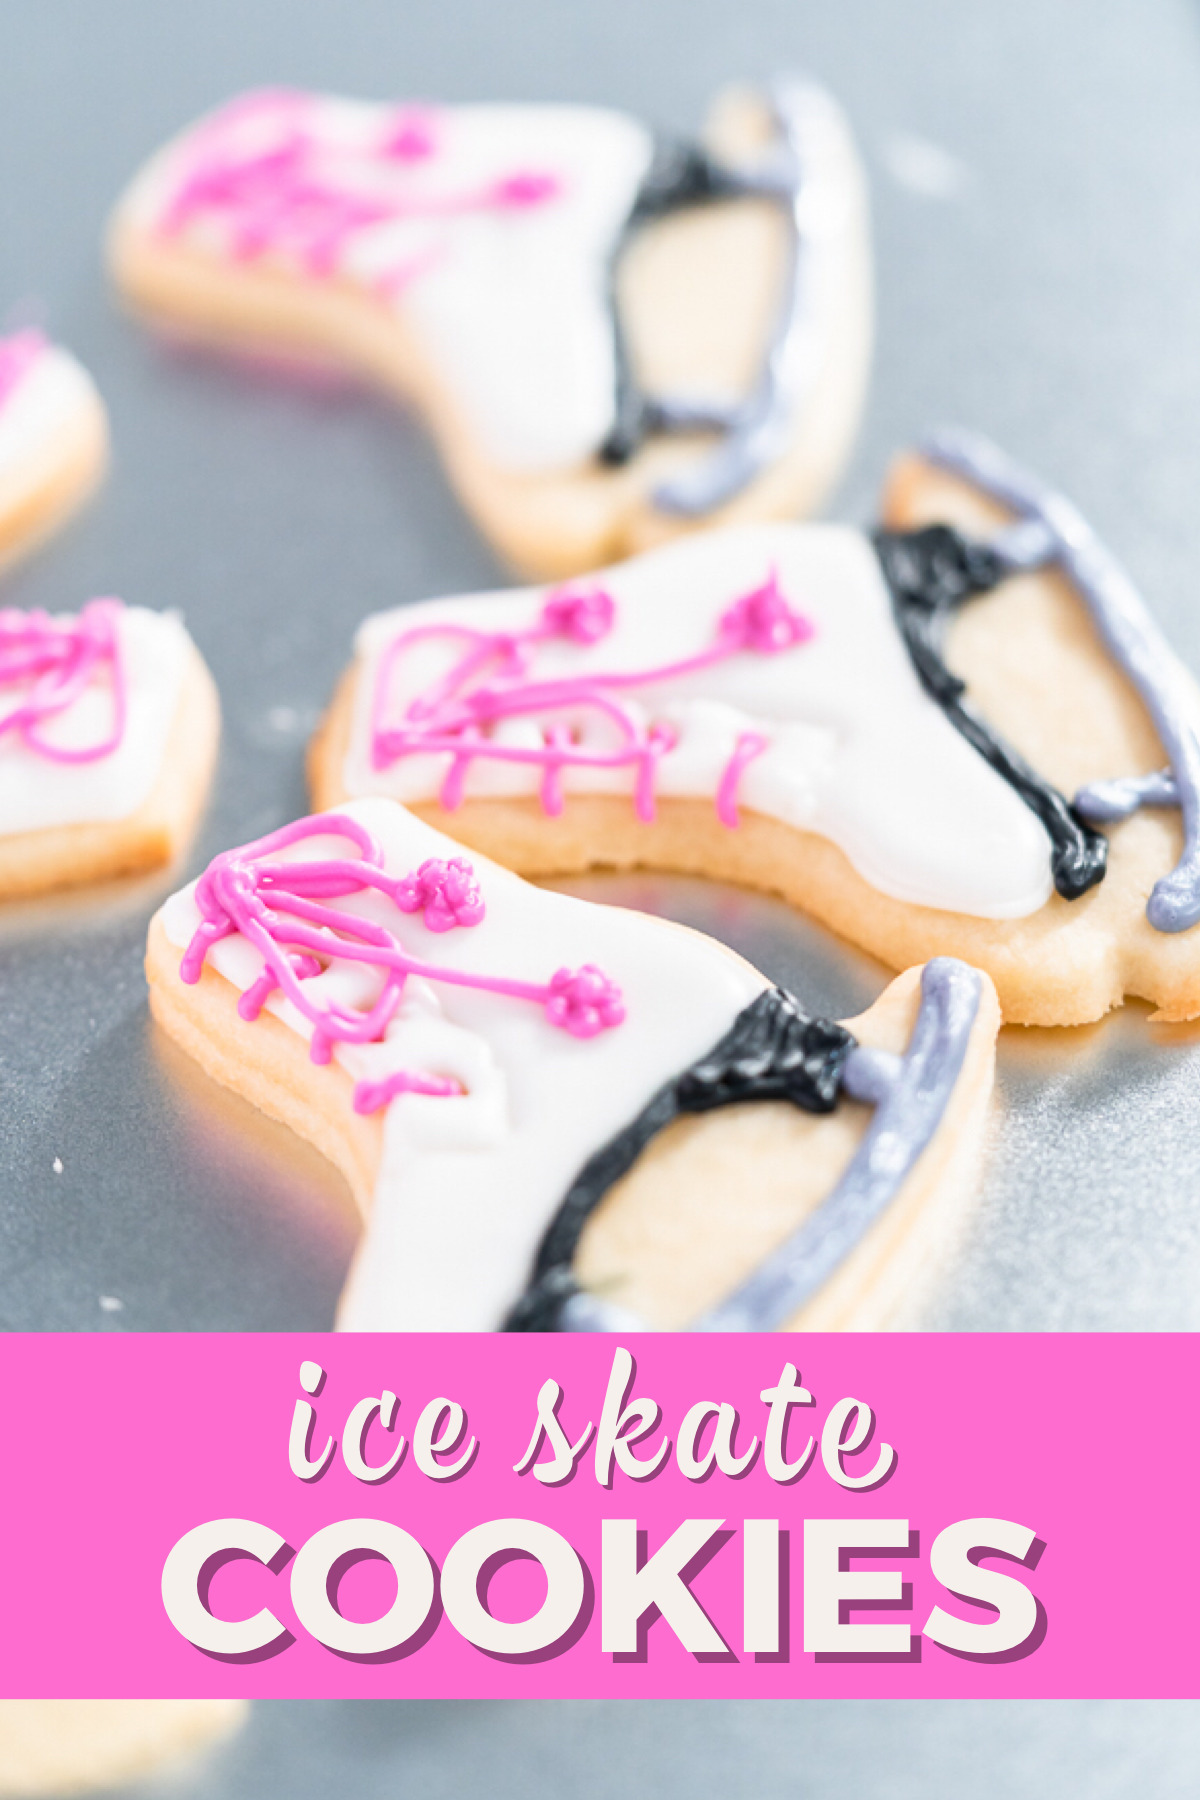 Ice skate cookies